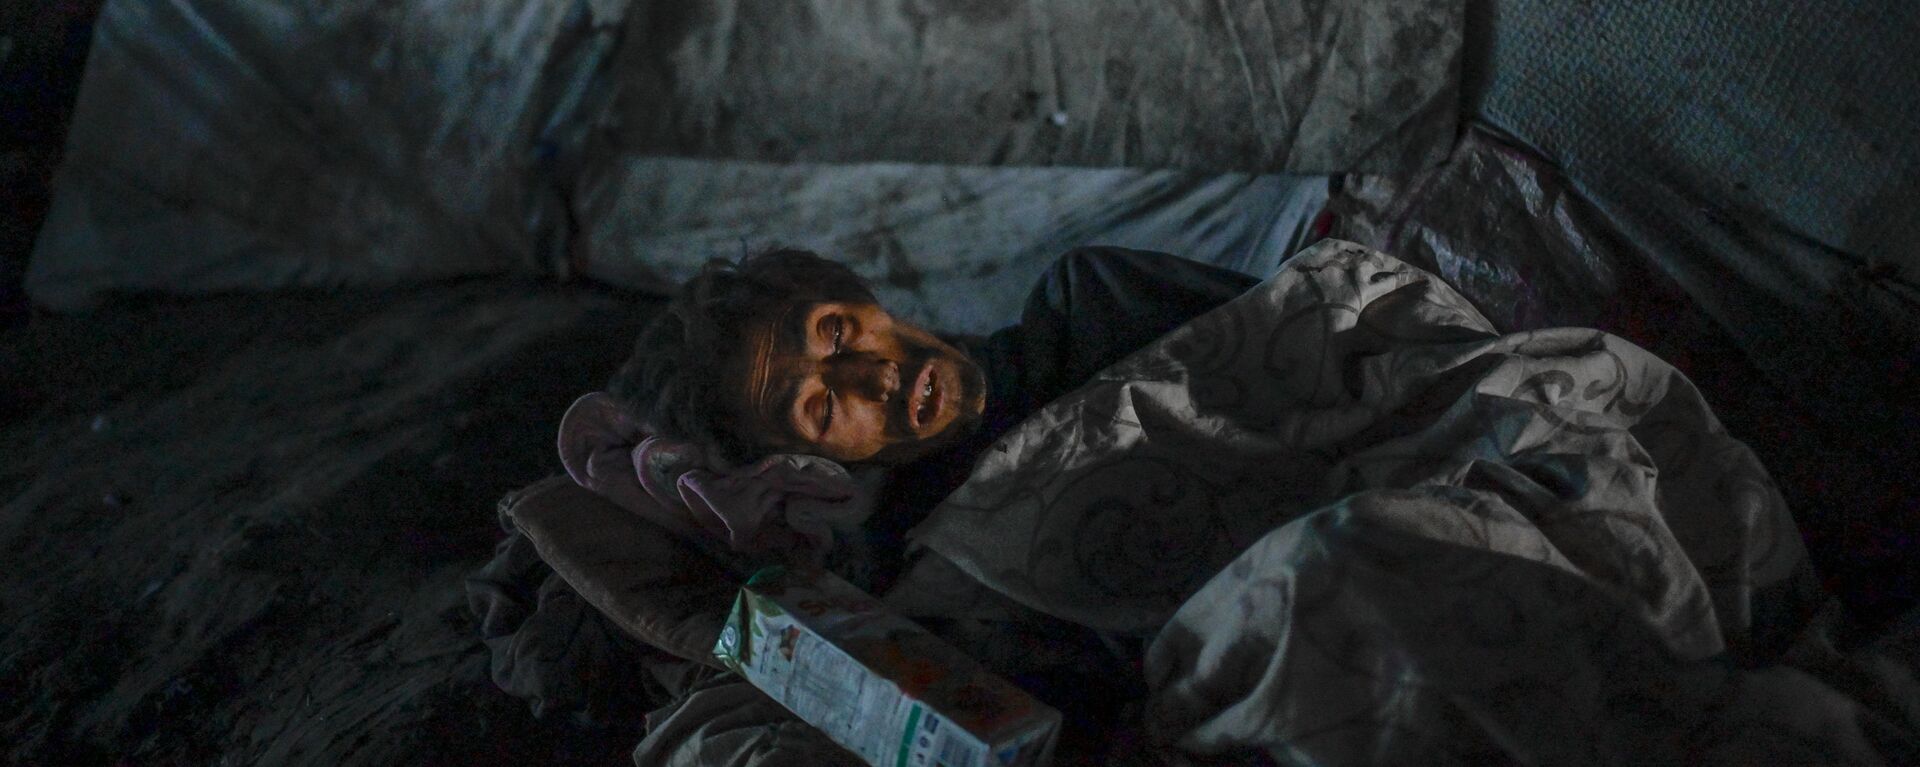 Наркоман, спящий под мостом в Кабуле, где собираются сотни наркозависимых  - Sputnik Тоҷикистон, 1920, 30.10.2021